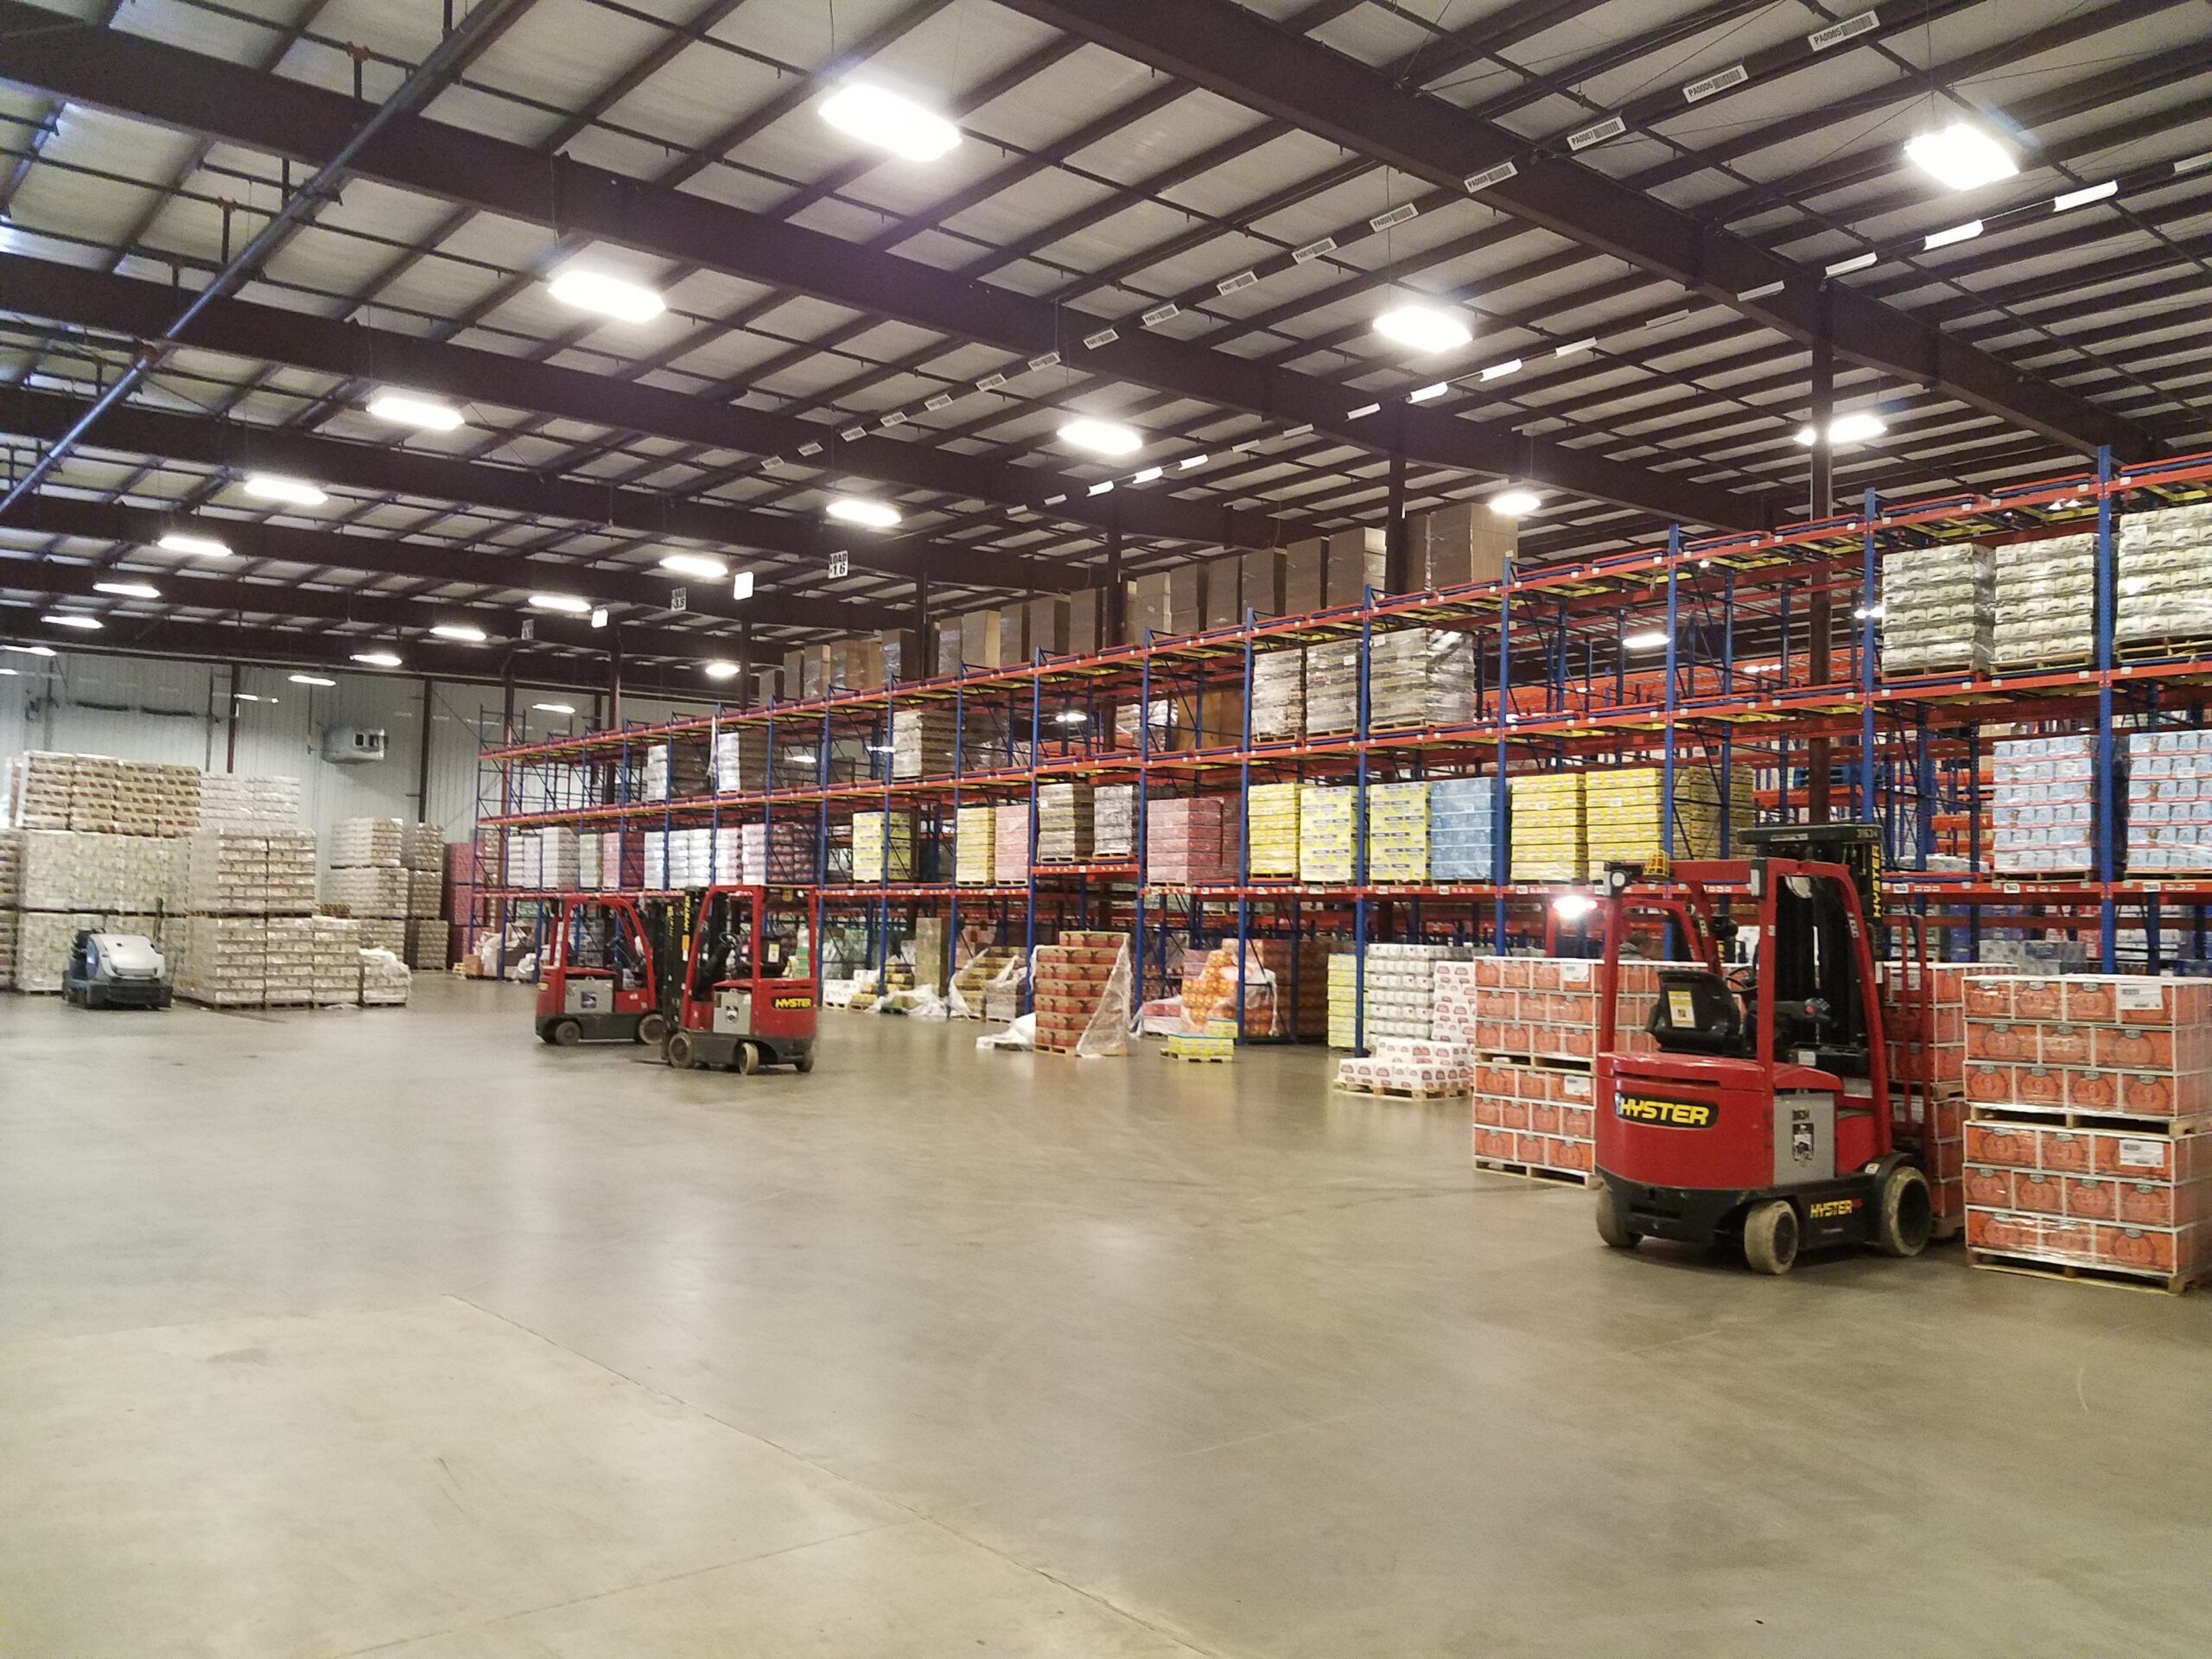 Budweiser warehouse jobs florida